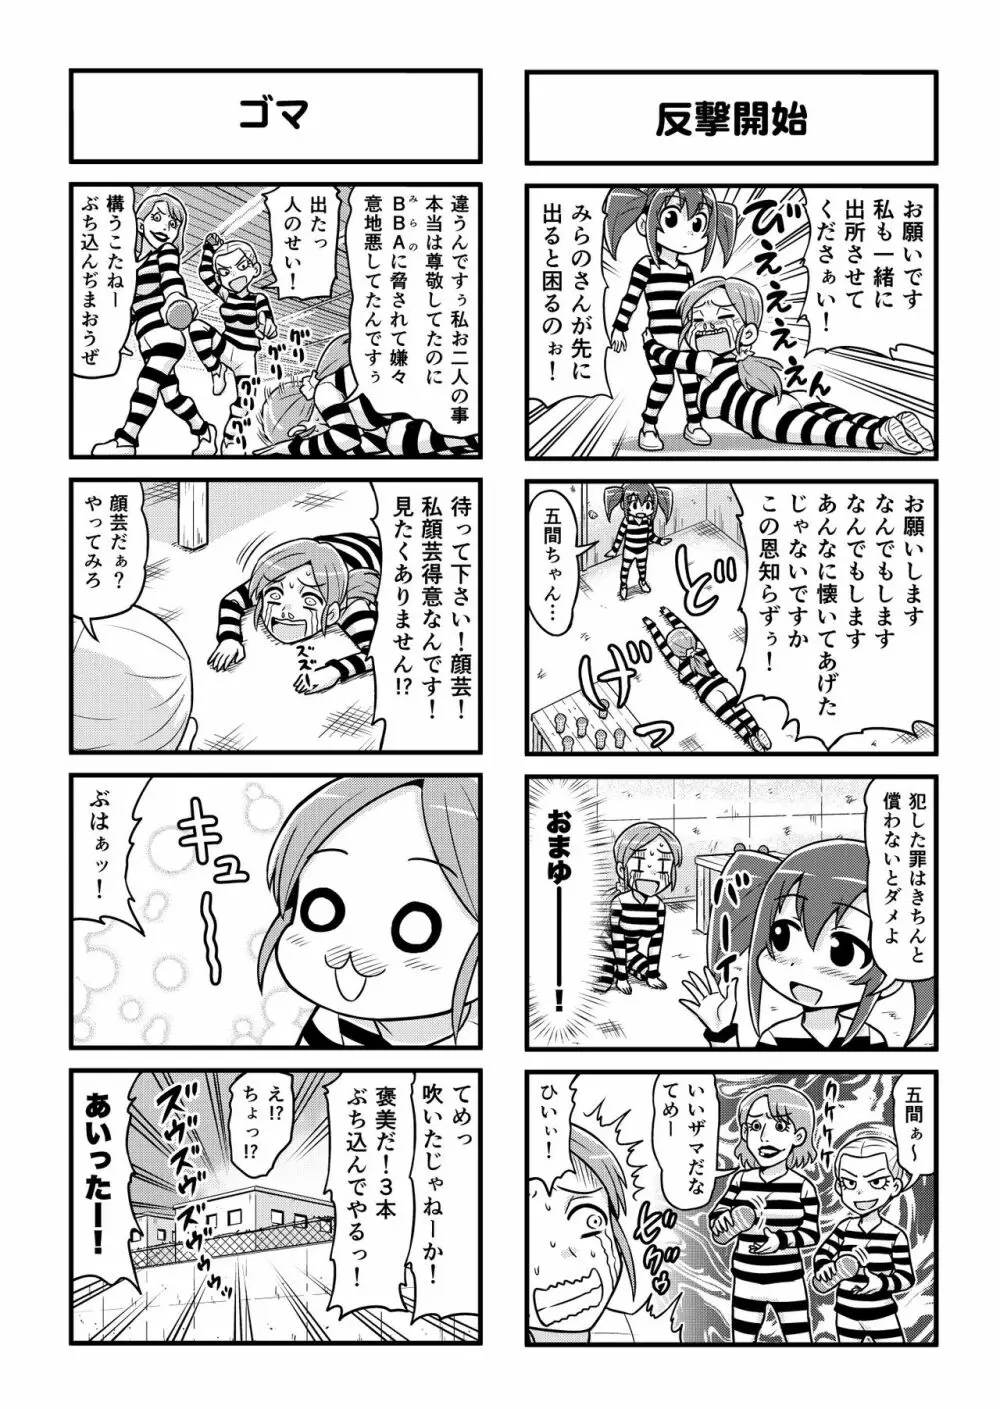 のんきBOY 1-38 251ページ